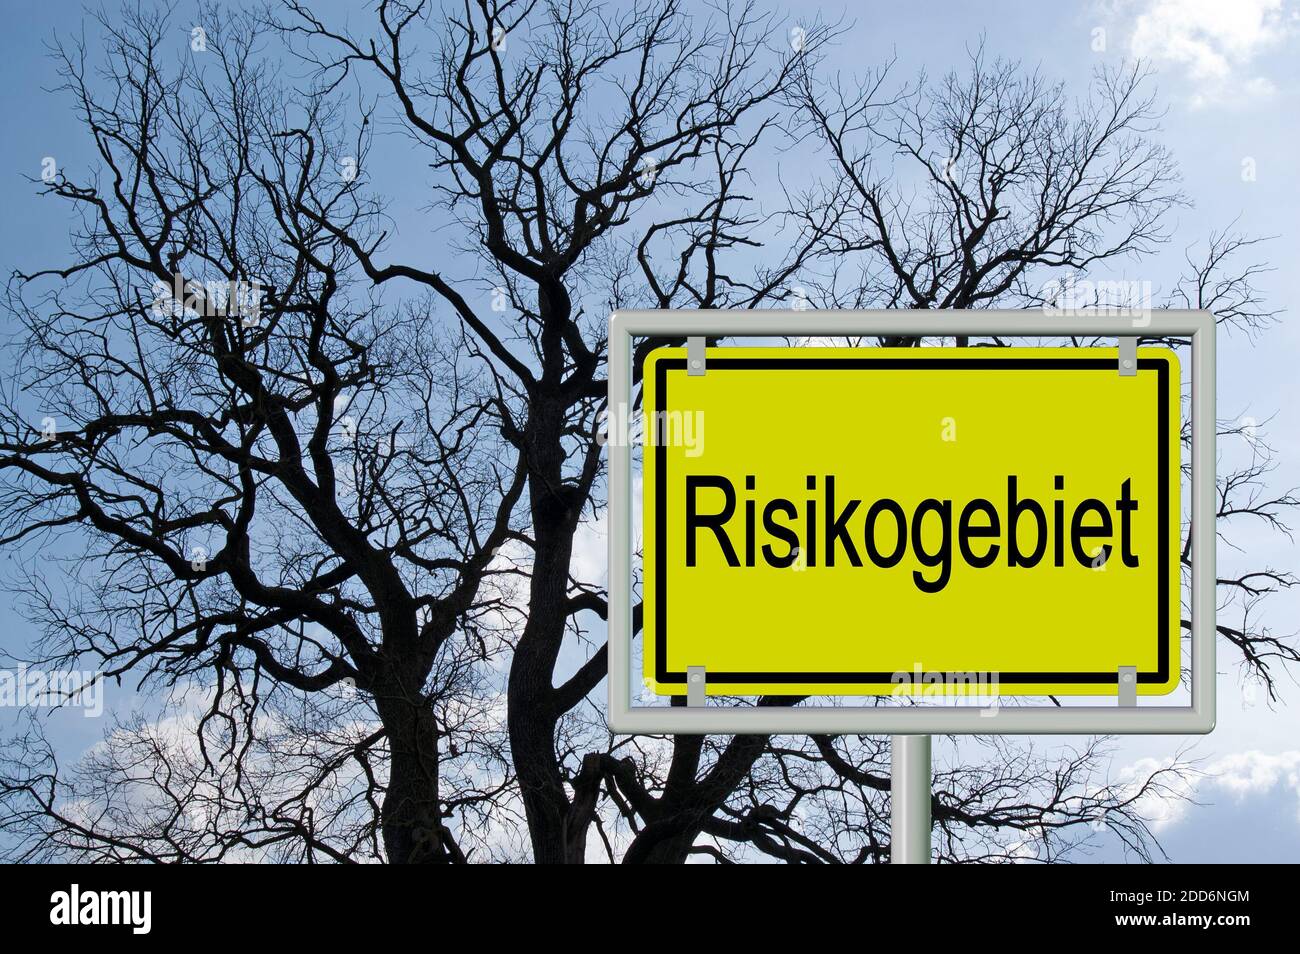 Segno del nome della località con la parola "Risikogebiet", tradotta "area di rischio" davanti a una silhouette ad albero Foto Stock